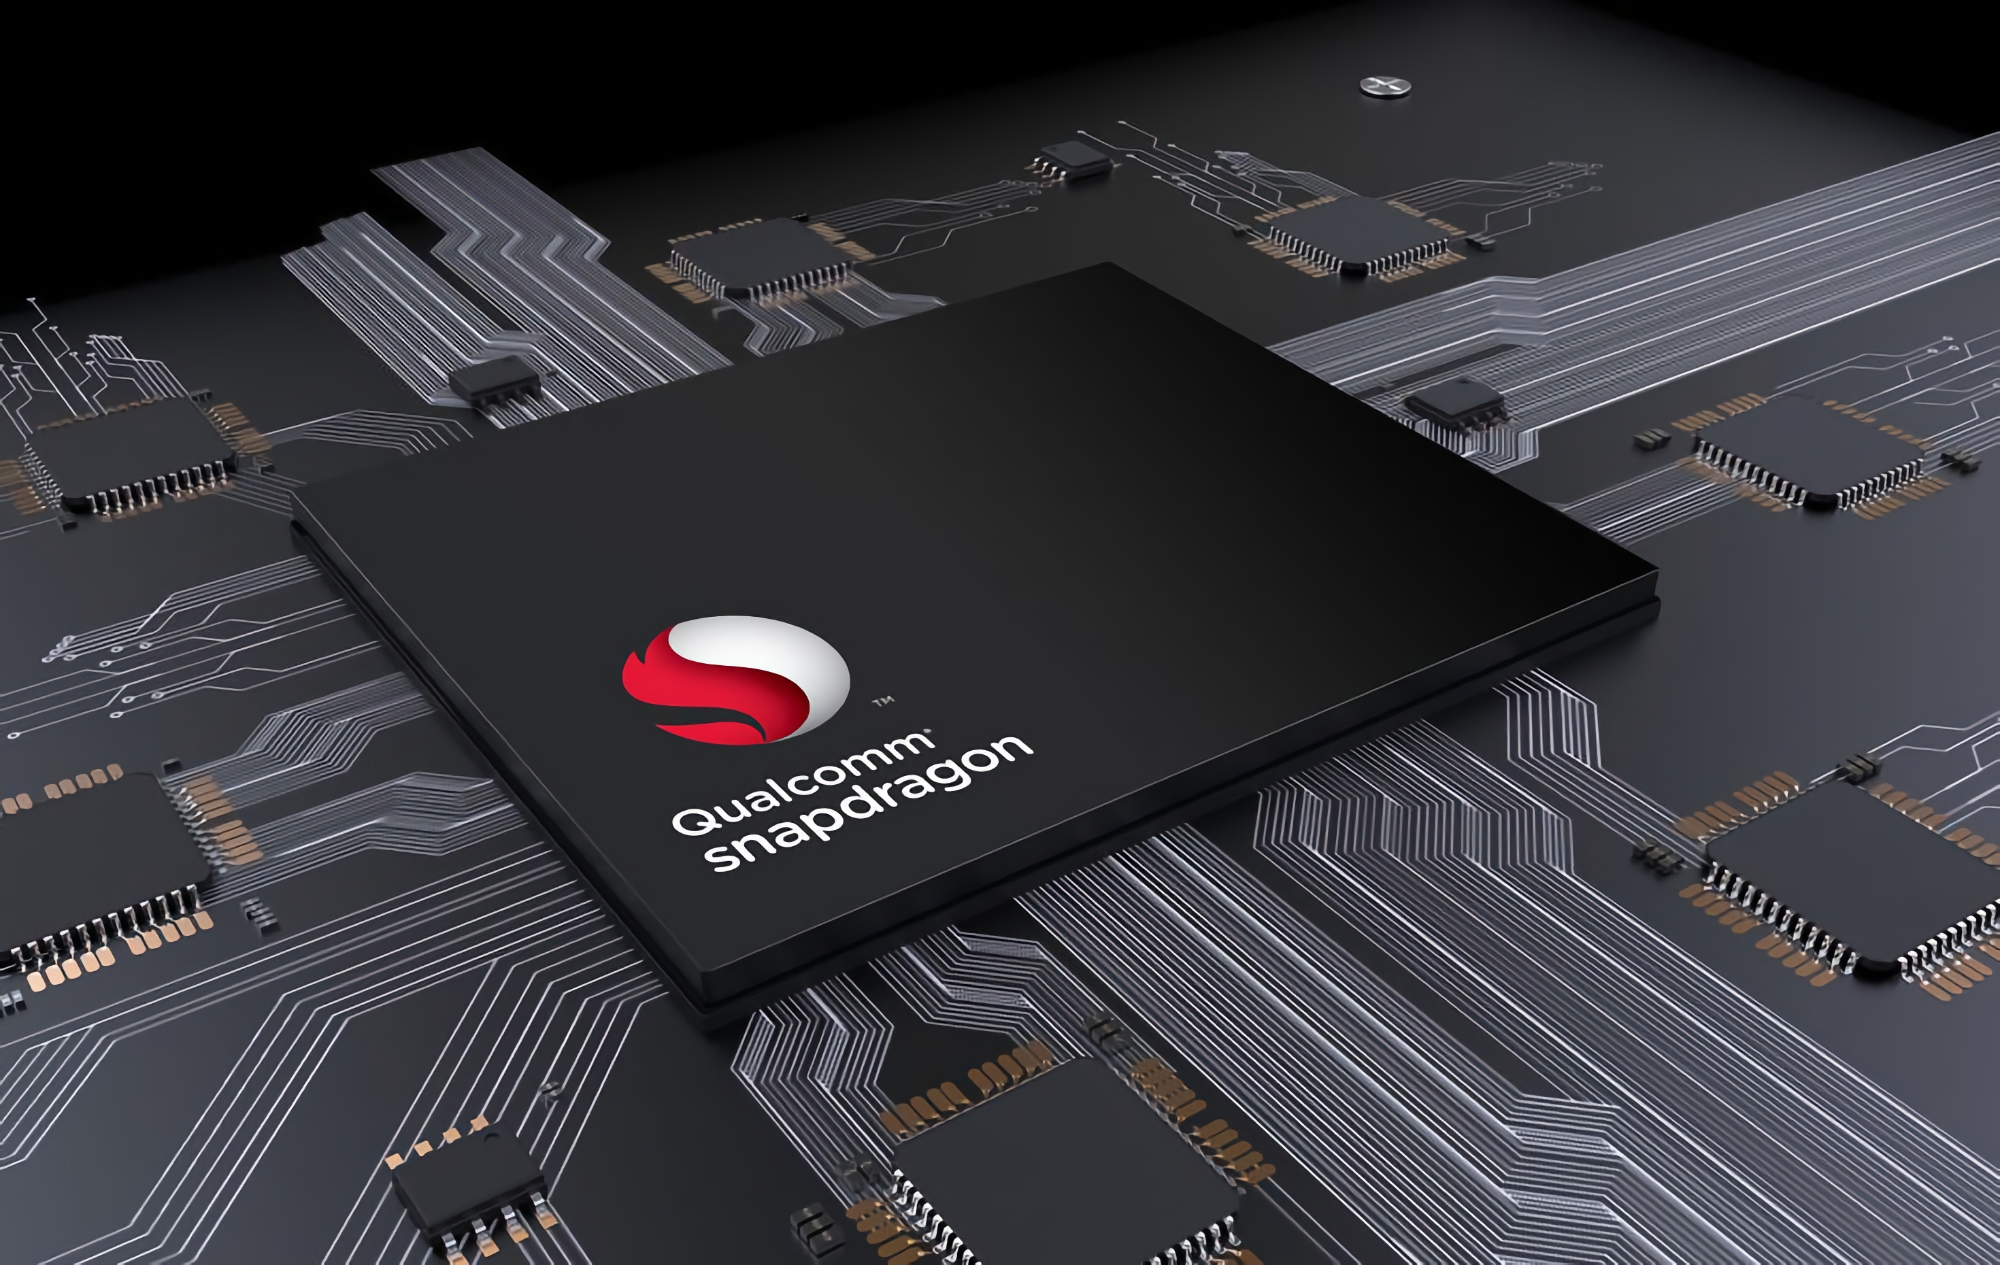 Fuente: Qualcomm cambiará el nombre del nuevo chip insignia Snapdragon 898 a Snapdragon 8 gen1